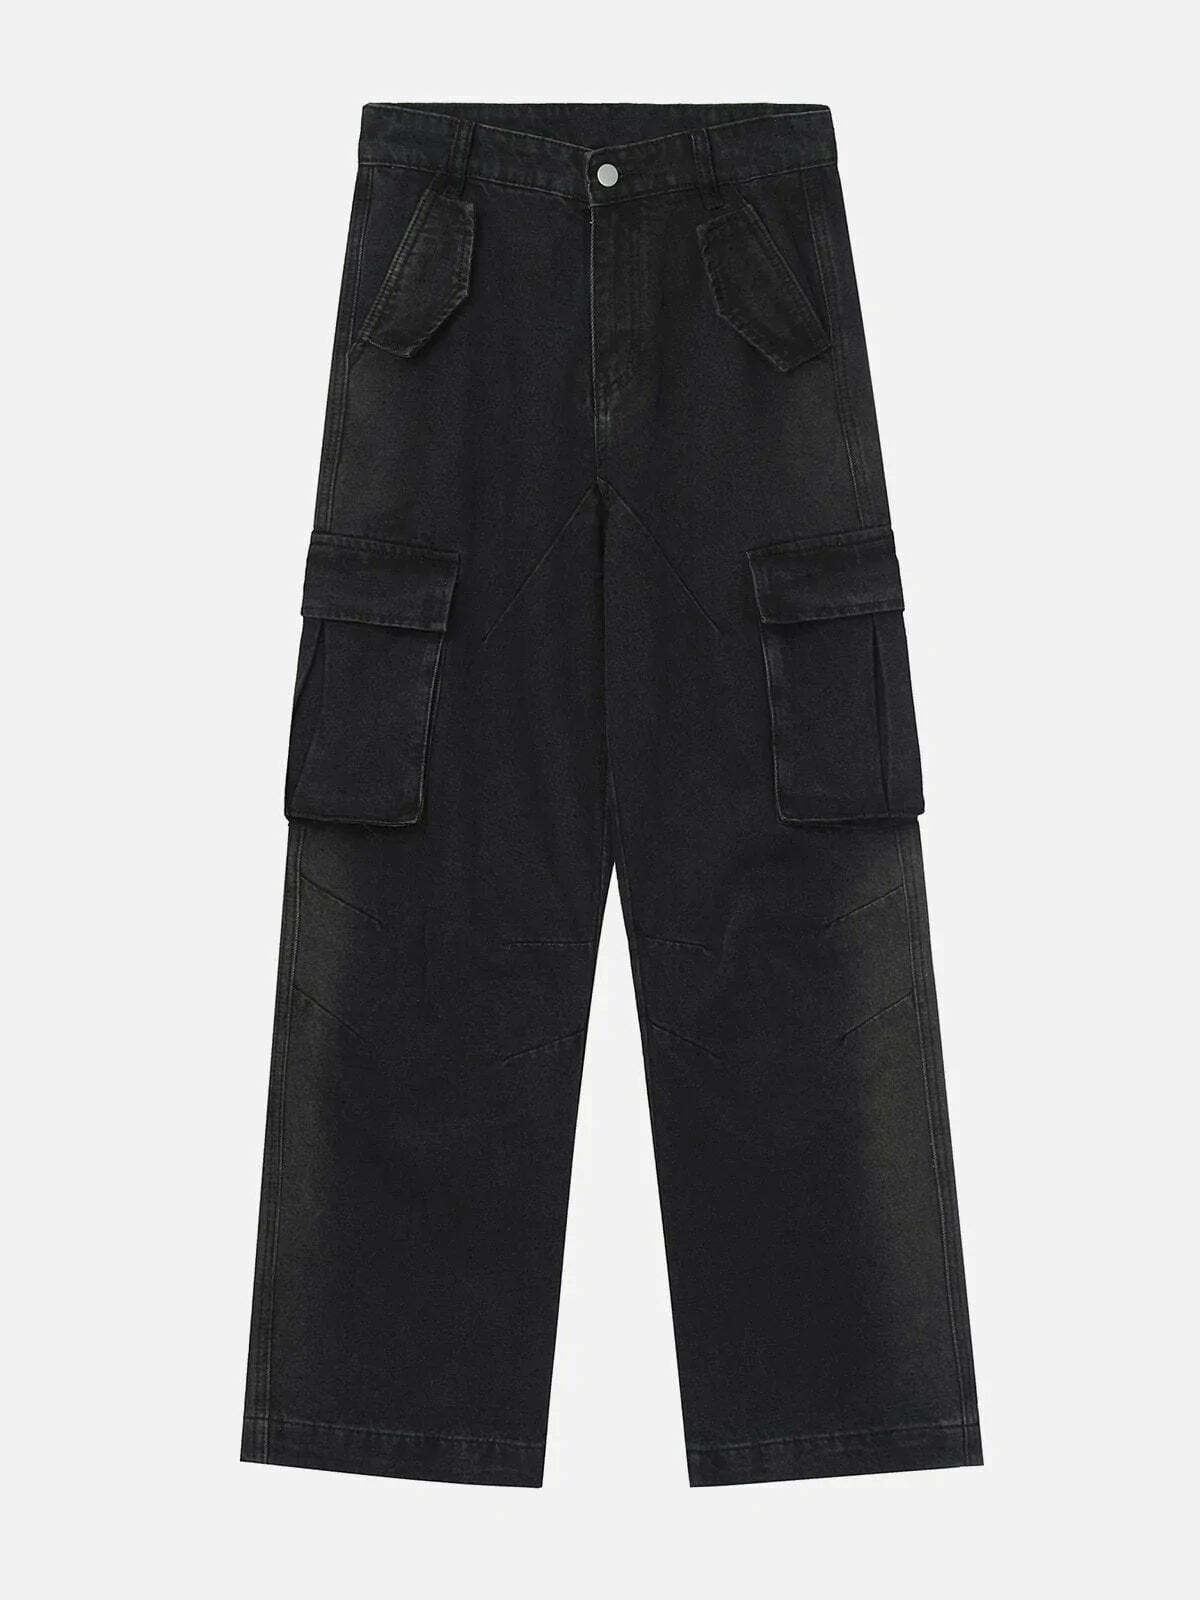 pleated pockets jeans edgy urban denim choice 3329